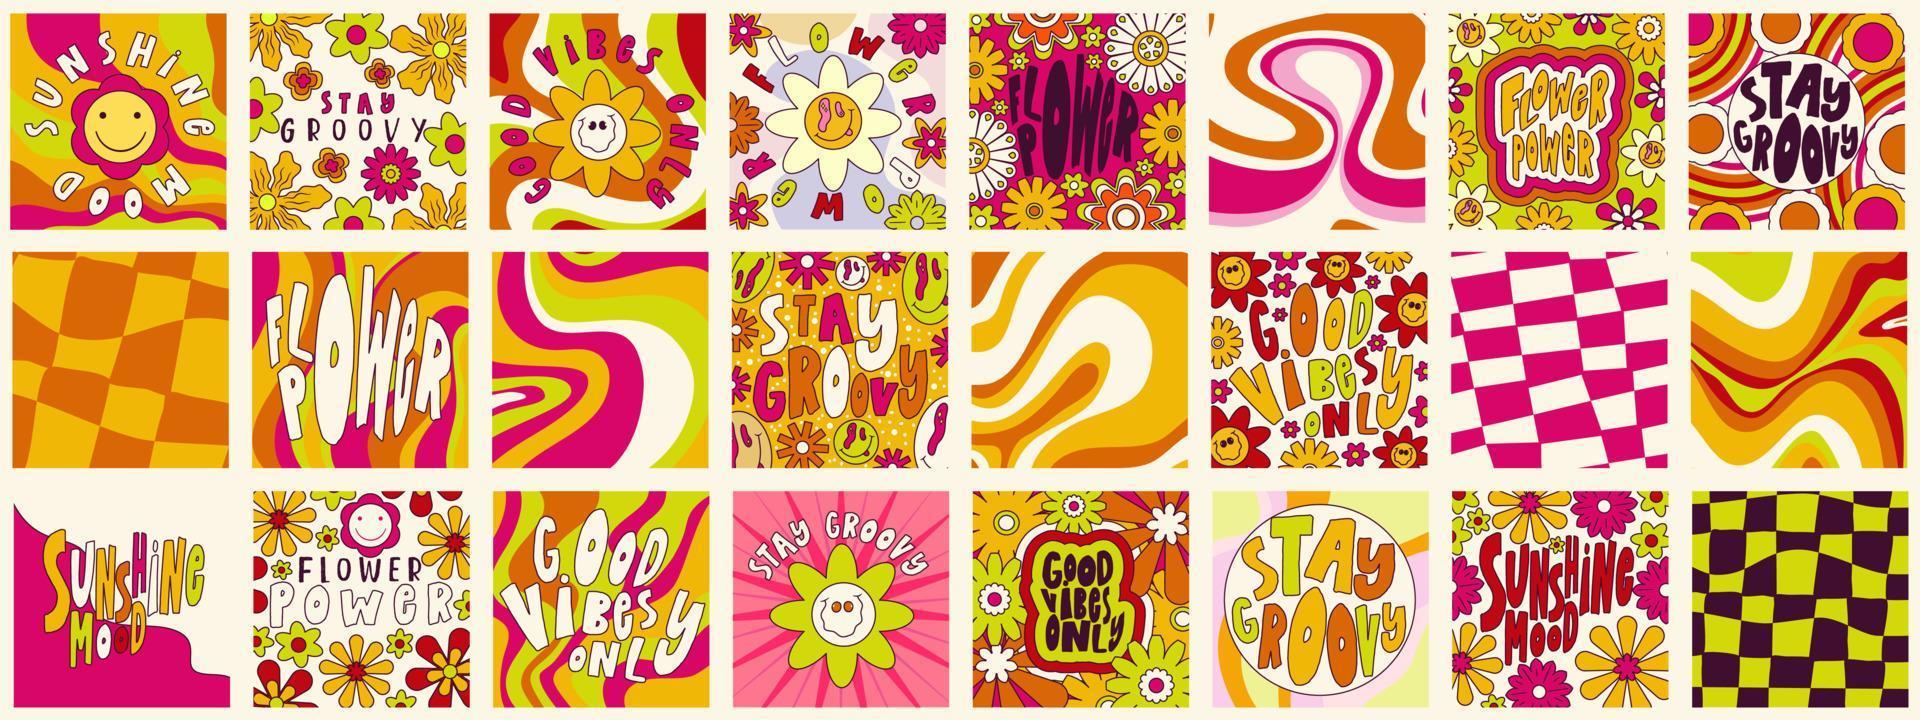 madeliefjebloemen, trippy groovy poster set voor print ontwerp offerte. psychedelische hippie groovy print. sjabloon poster vectorillustratie. abstract vectorpatroon. golvende werveling, dambord, strakke kleur vector